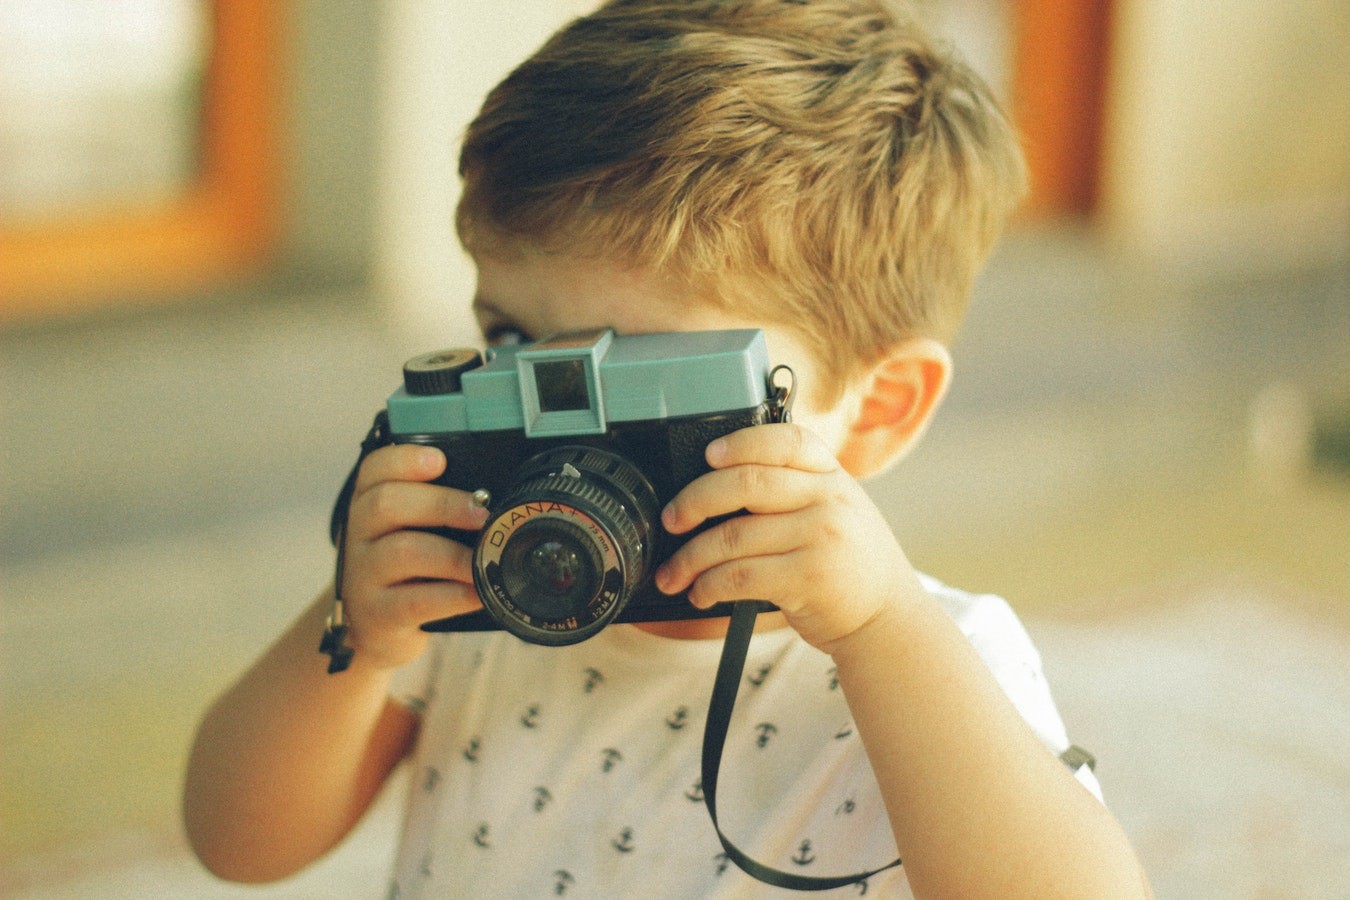 Включи свет мальчик. Фотограф ребенок. Детки с фотоаппаратом у дома. Ребенок с детским фотоаппаратом дома. Фотосъемка детей как развиваться.